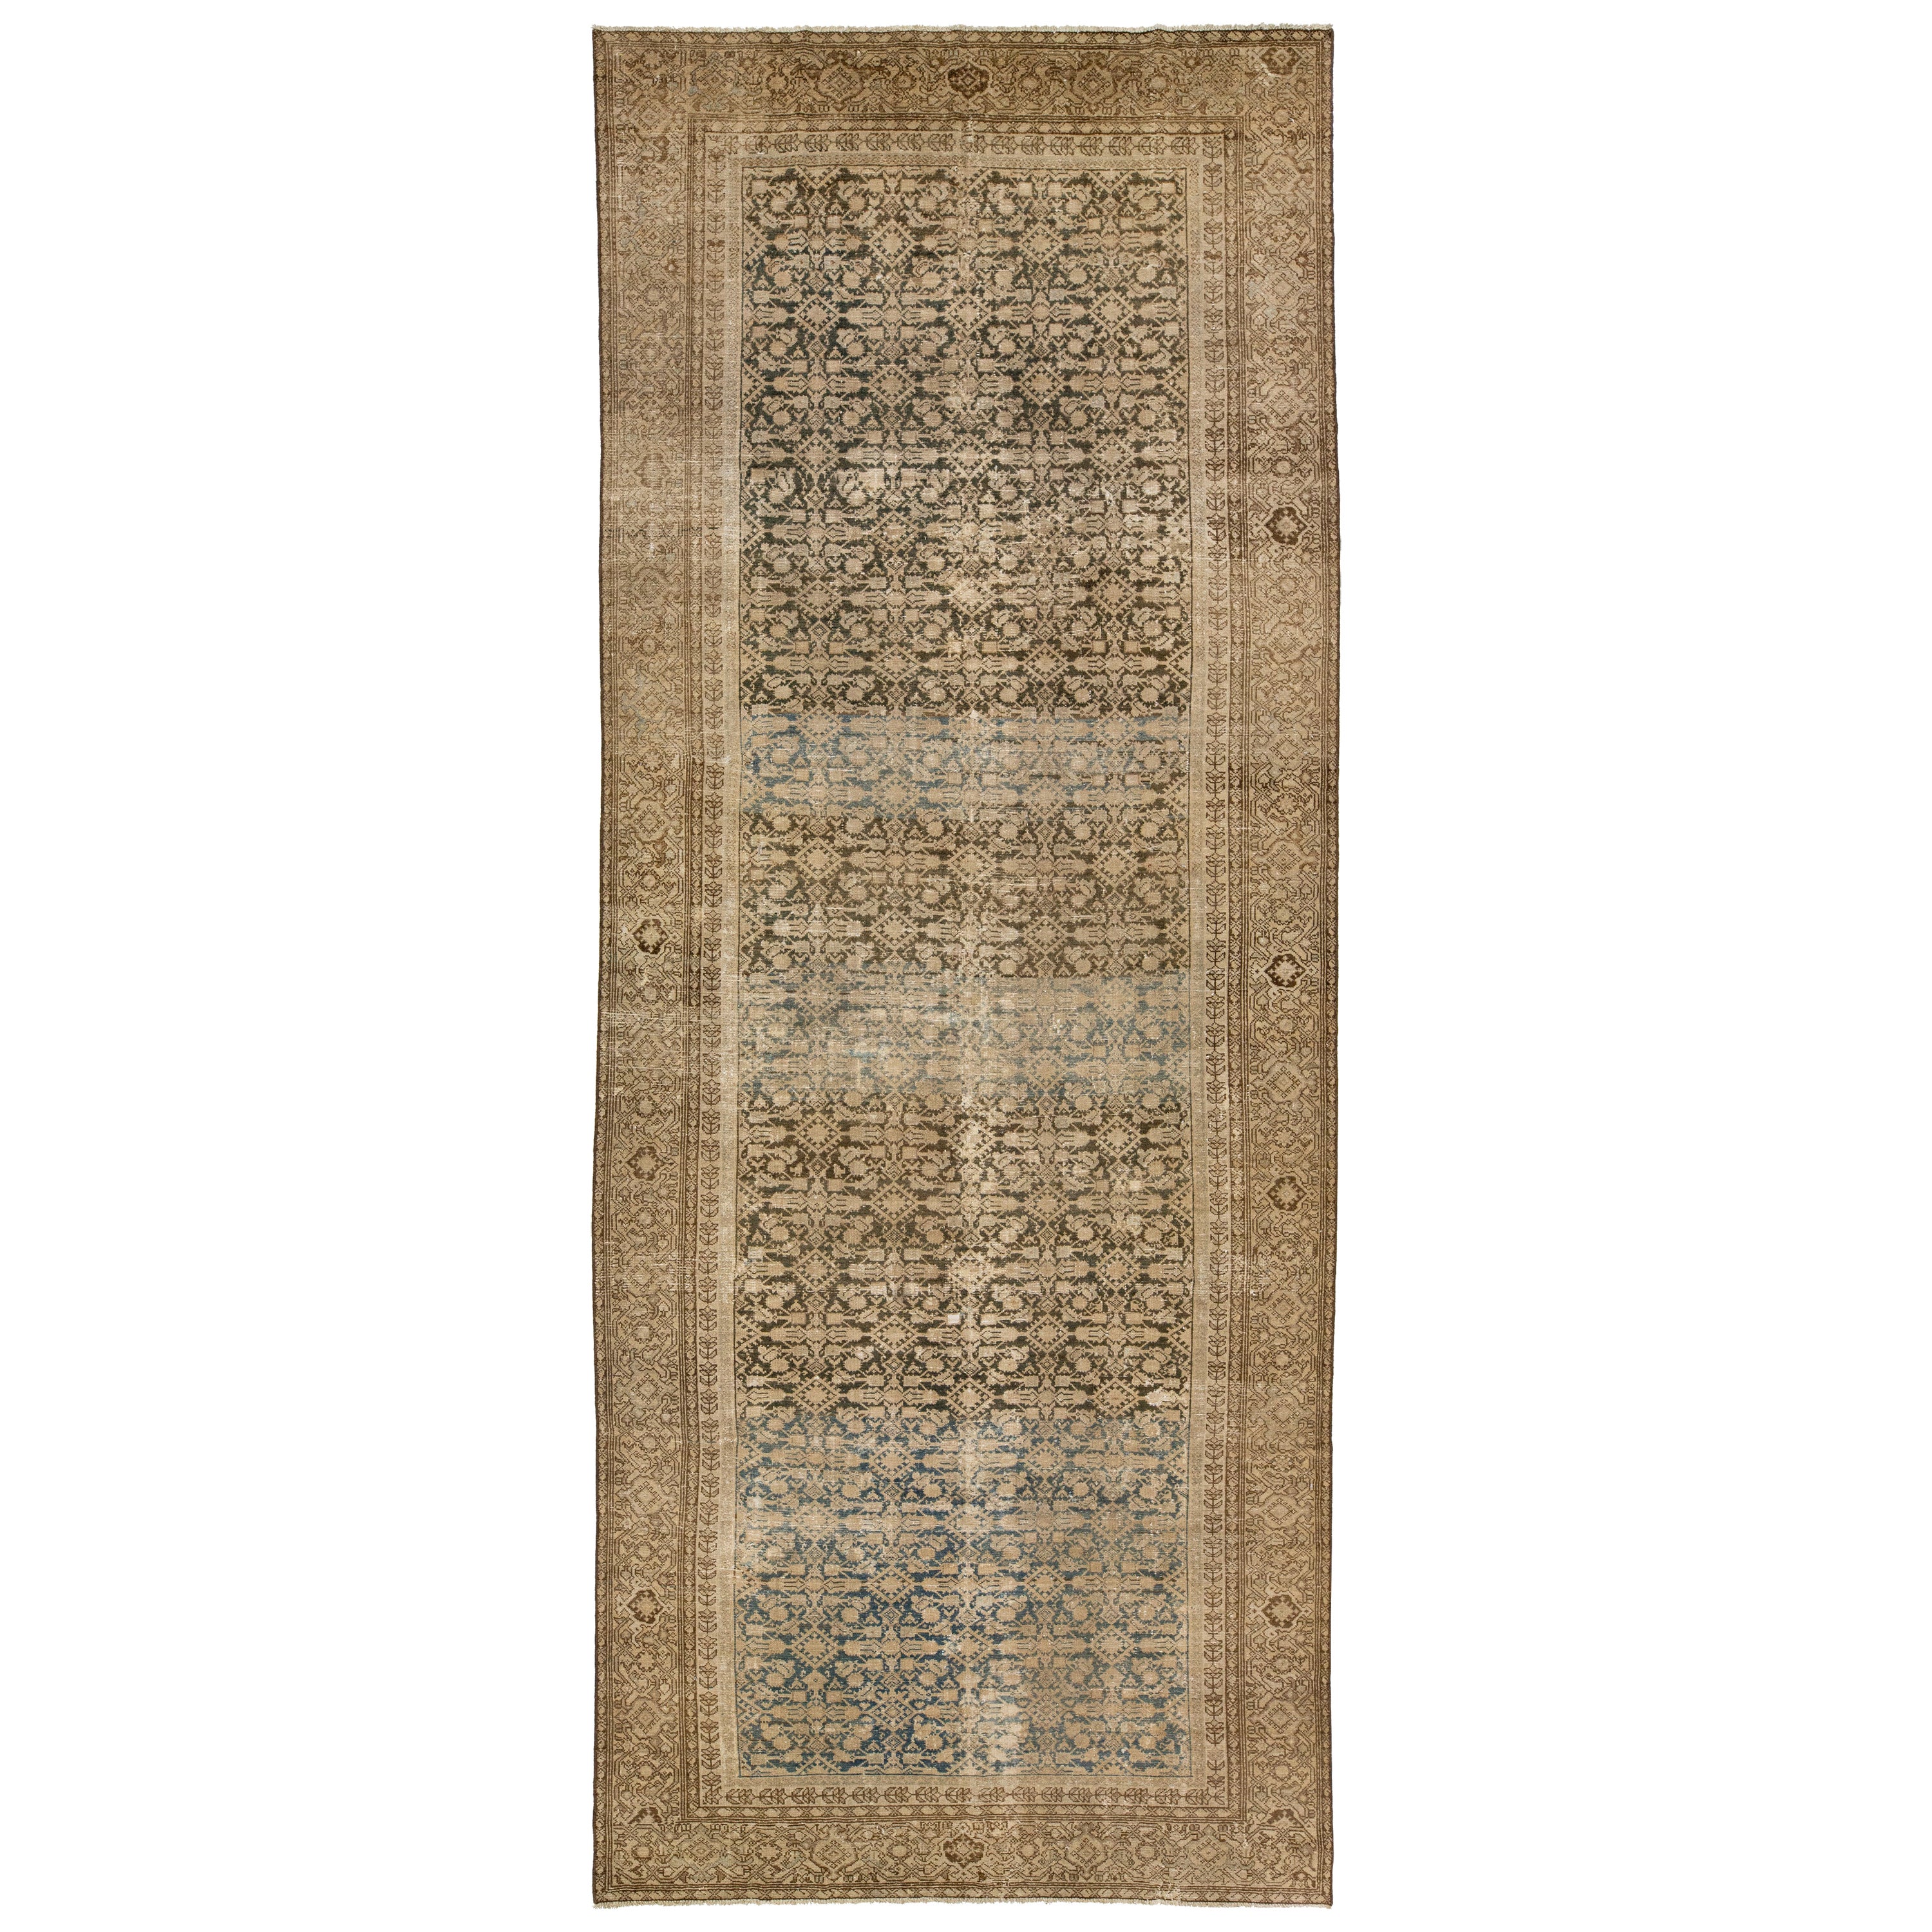 Tapis persan en laine Malayer des années 1900, de couleur Brown